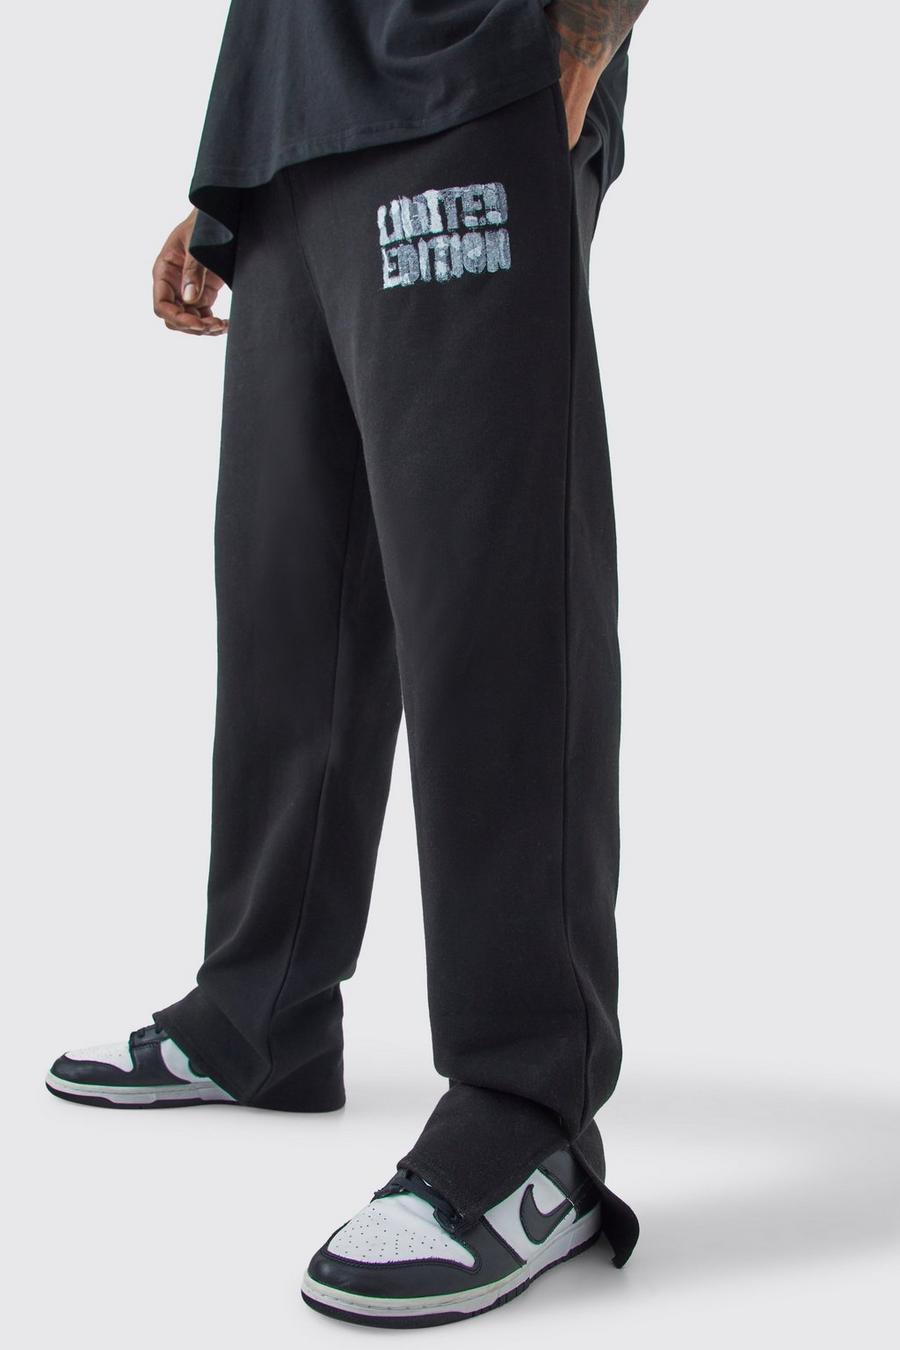 Pantalón deportivo Plus negro Limited Edition con abertura en el bajo, Black image number 1